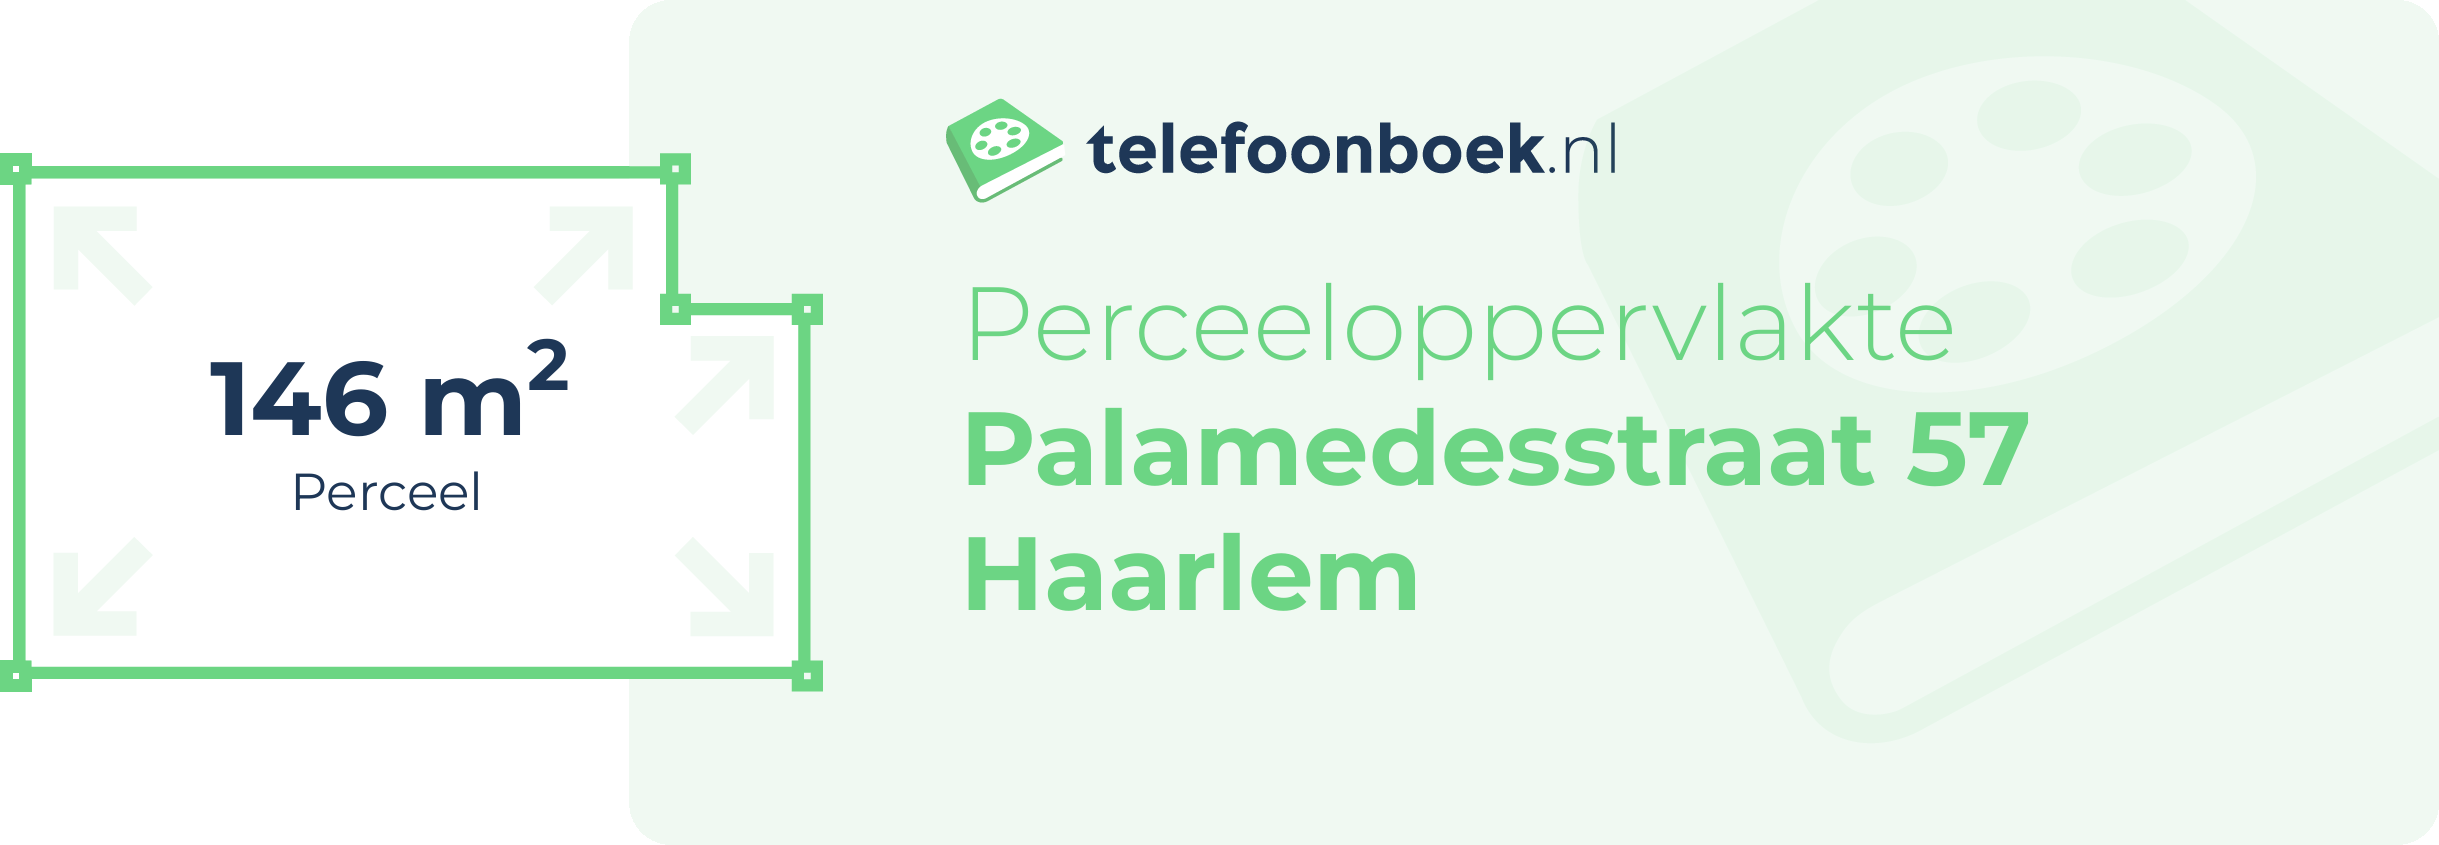 Perceeloppervlakte Palamedesstraat 57 Haarlem